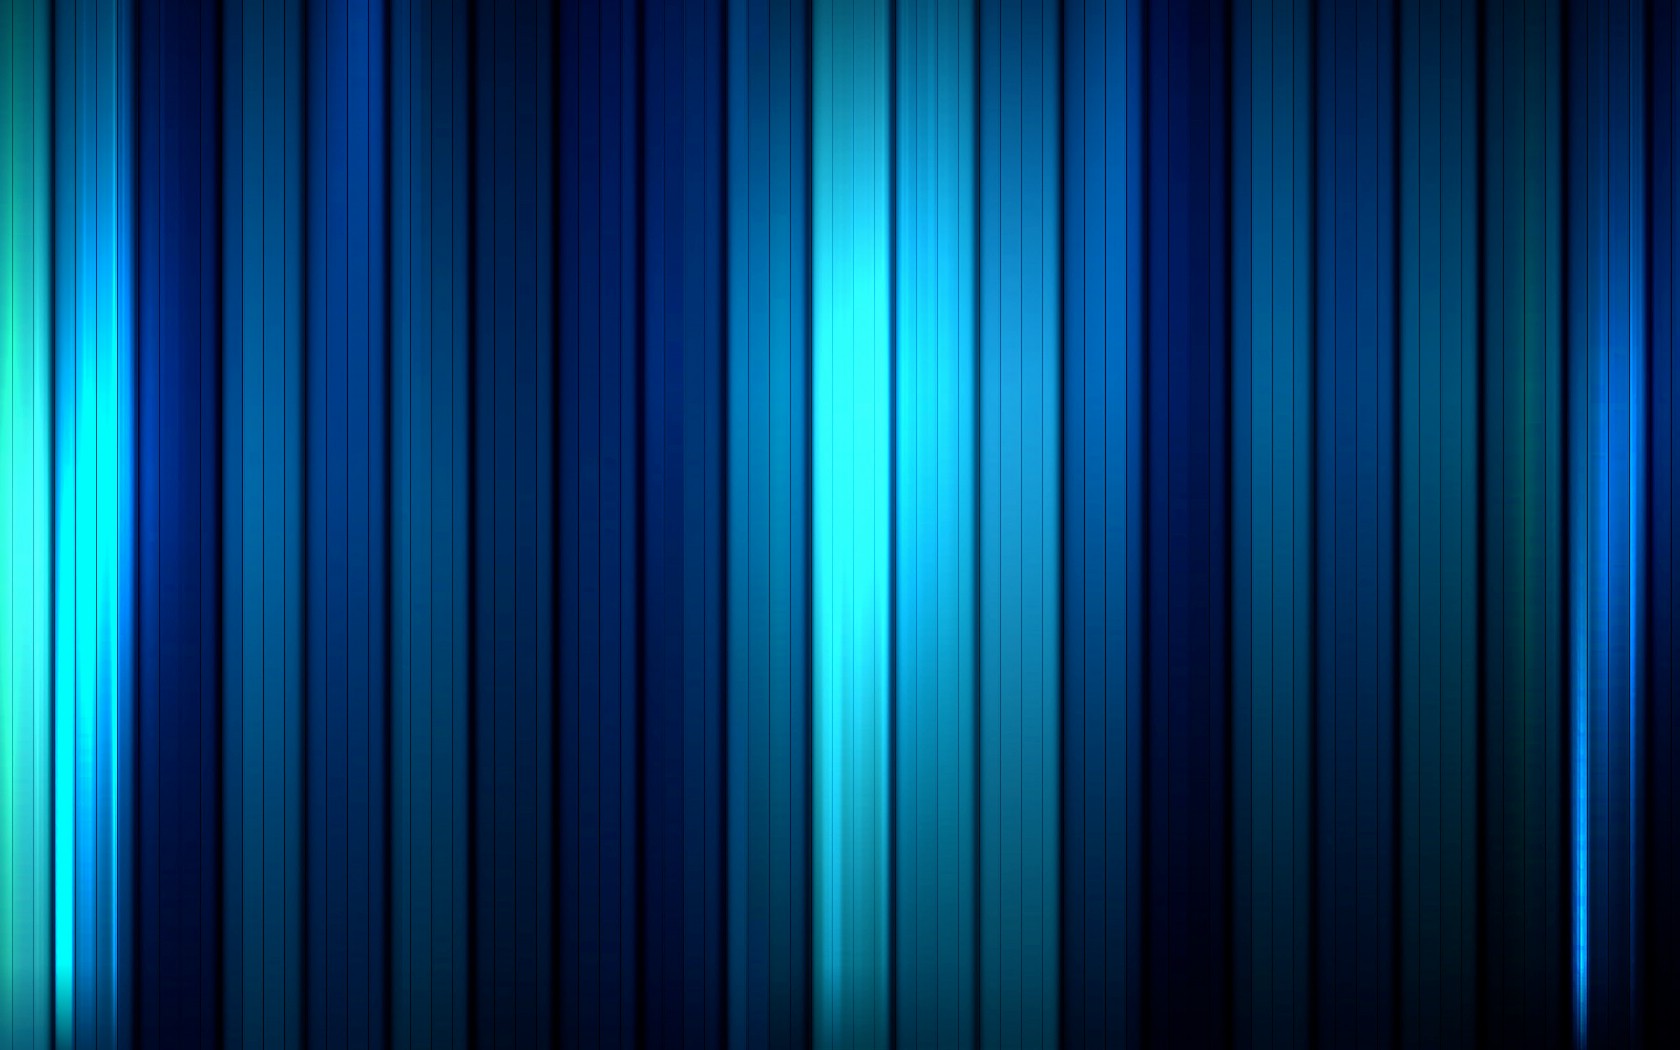 壁纸1680x1050蓝色静谧主题系列壁纸壁纸 蓝色静谧主题系列壁纸壁纸 蓝色静谧主题系列壁纸图片 蓝色静谧主题系列壁纸素材 创意壁纸 创意图库 创意图片素材桌面壁纸